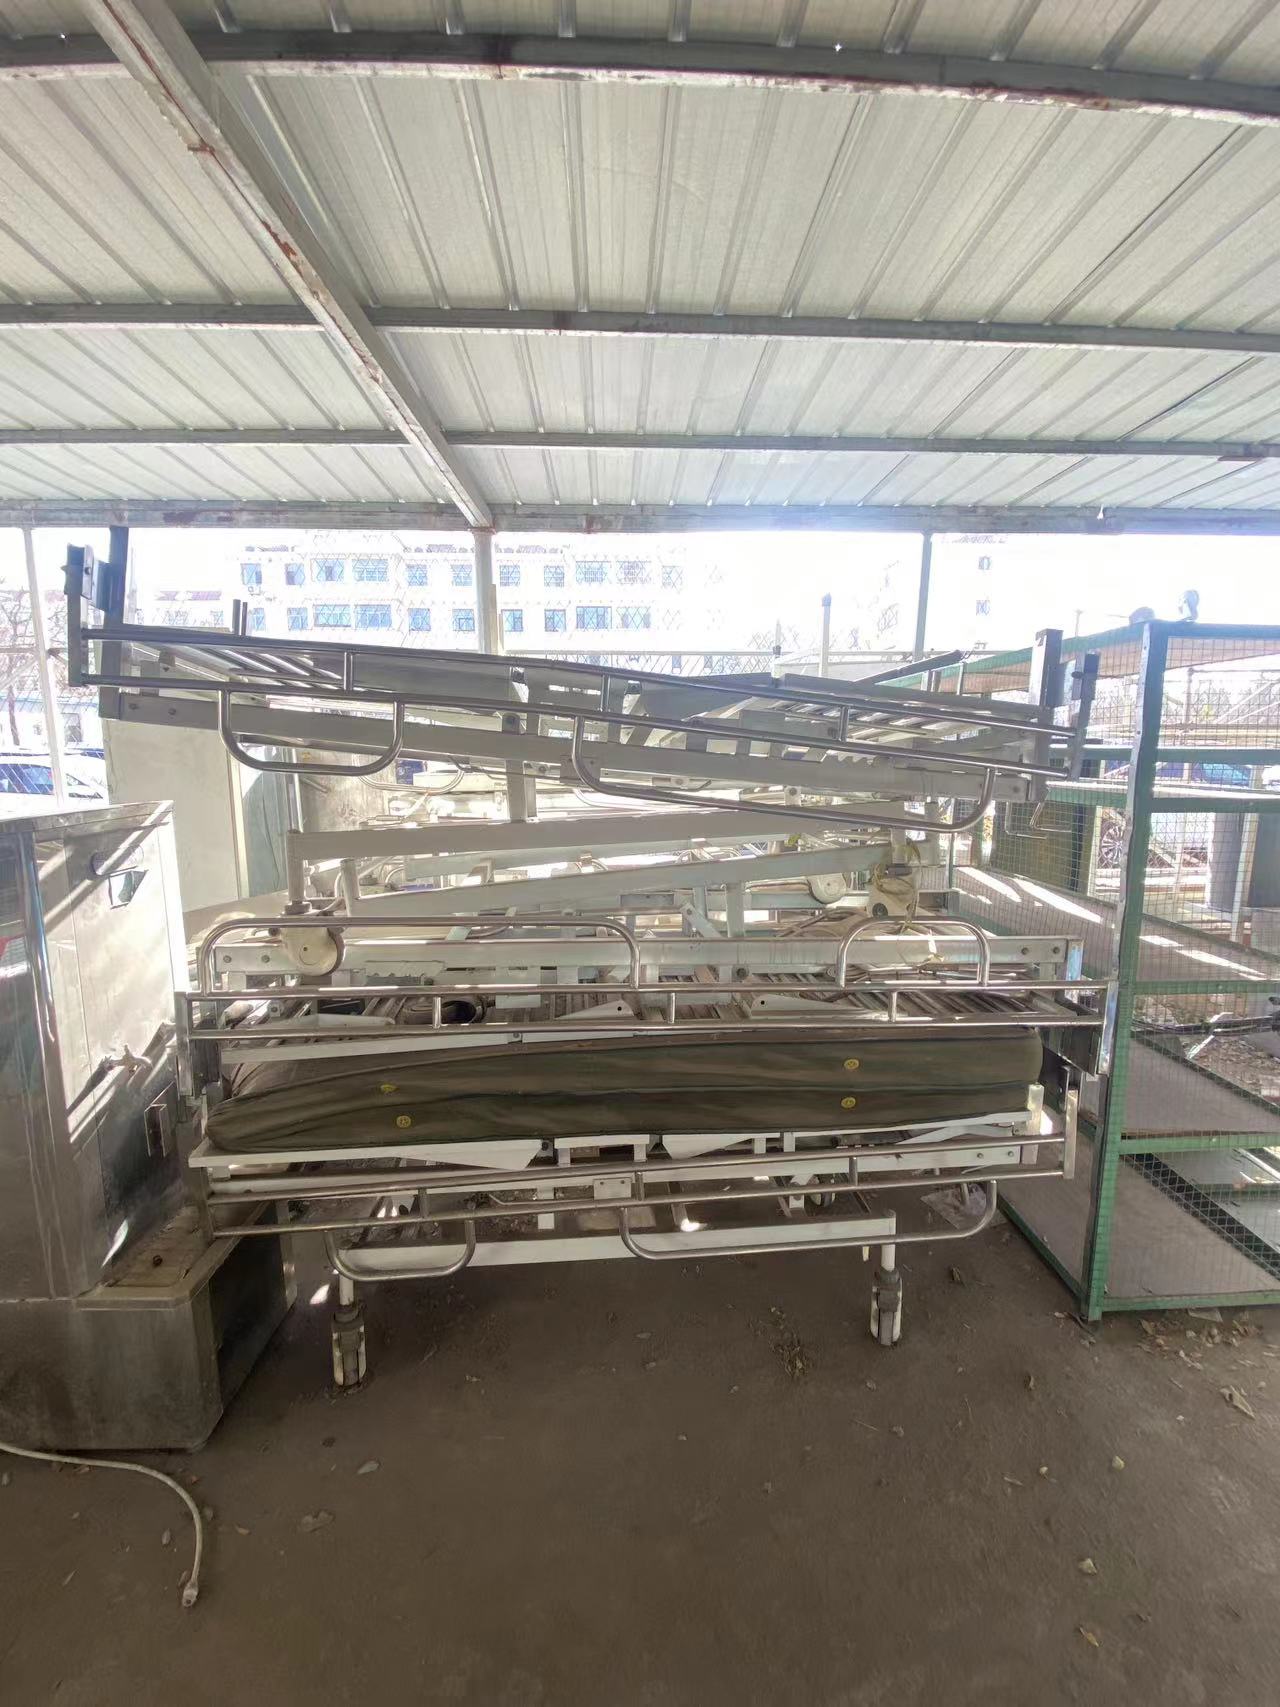 宁夏回族自治区第五人民医院手术床 茶炉 衣柜等一批报废资产处置项目出售招标